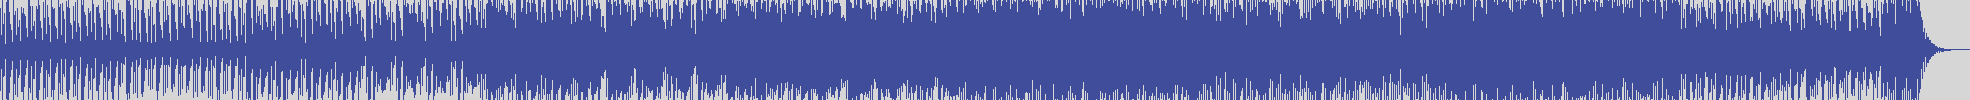 noclouds_chillout [NOC039] Dj Kam - Ignoto [Original Mix] audio wave form